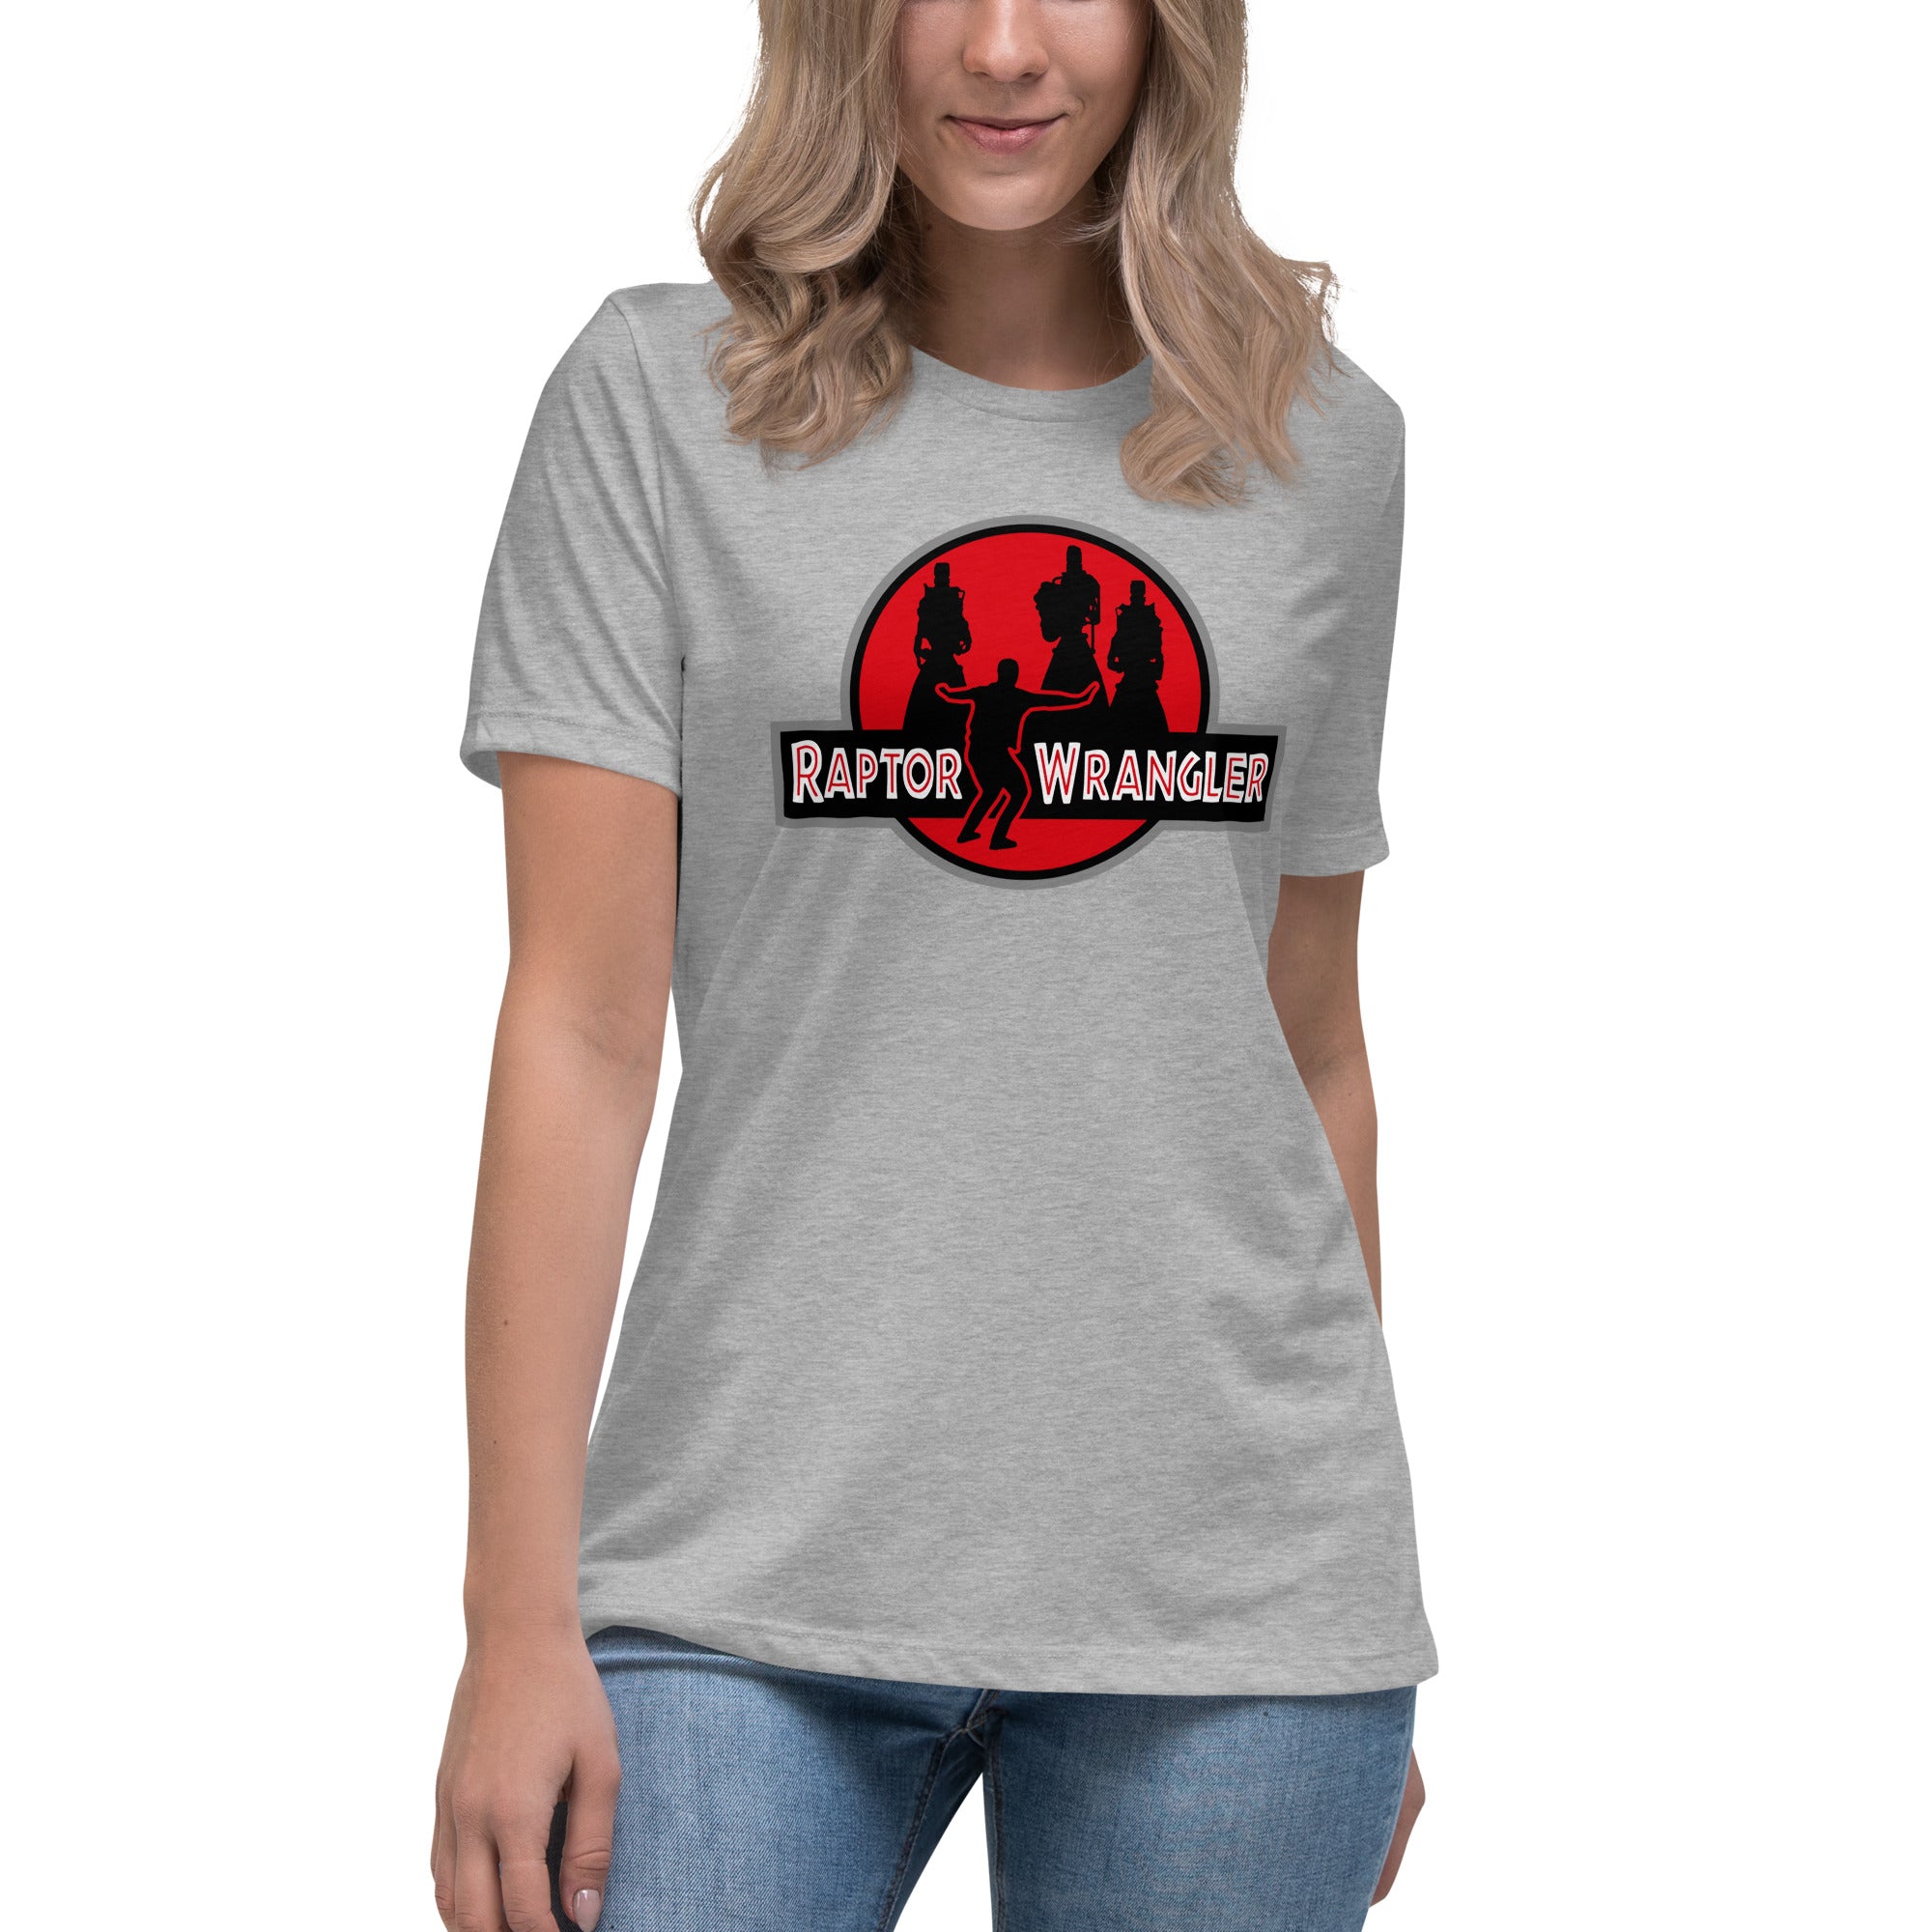 Raptor Wrangler - Unisex T-Shirt